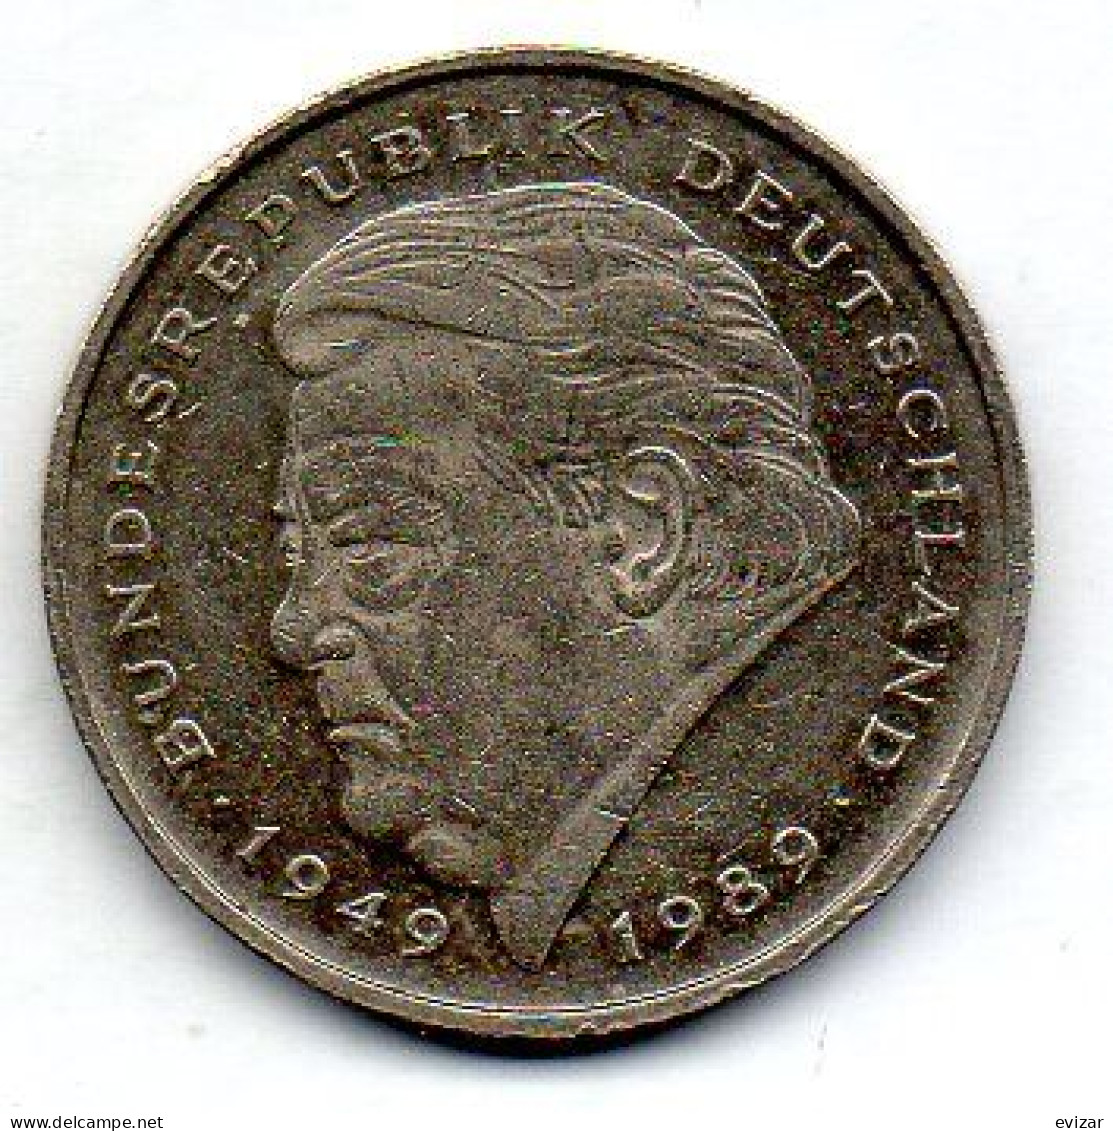 GERMANY - FEDERAL REPUBLIC, 2 Mark, Copper-Nickel, Year 1991-A, KM # 175 - 2 Mark